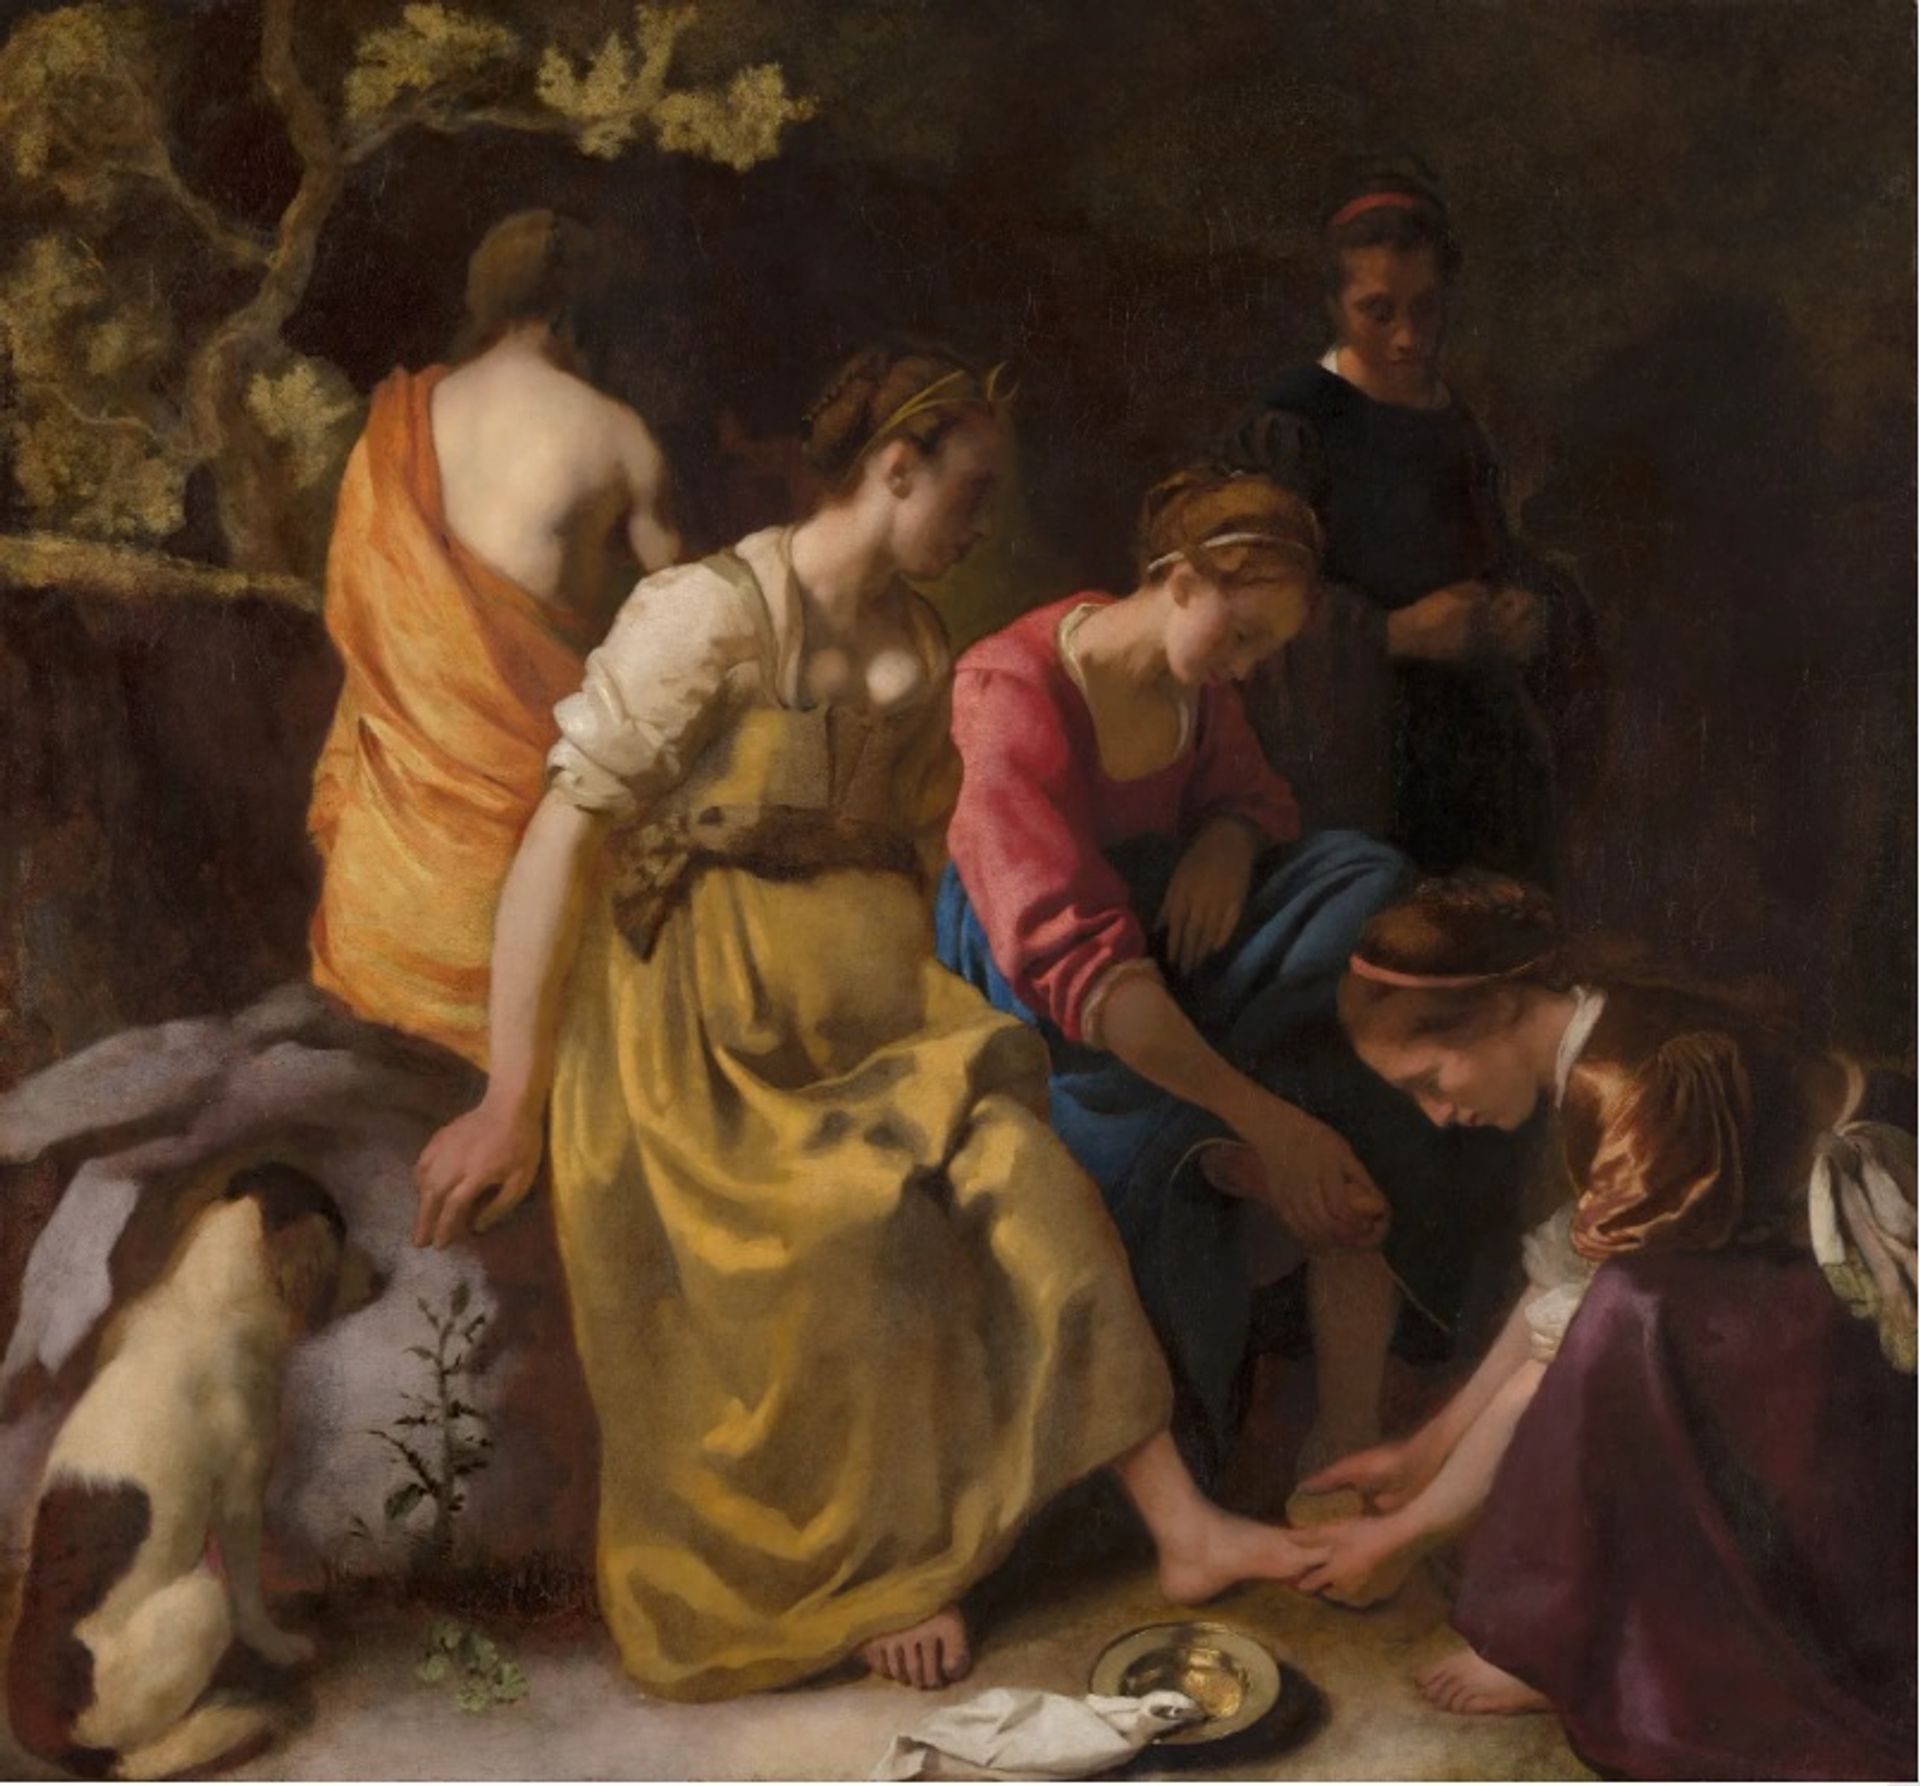 "דיאנה והנימפות שלה" (1653-54), של יוהנס ורמיר. חלק מ"אוסף מאוריצהאוס", יצטרף כעת לתערוכה של ה"רייקסמוזיאום"

באדיבות "מאוריצהאוס", האג